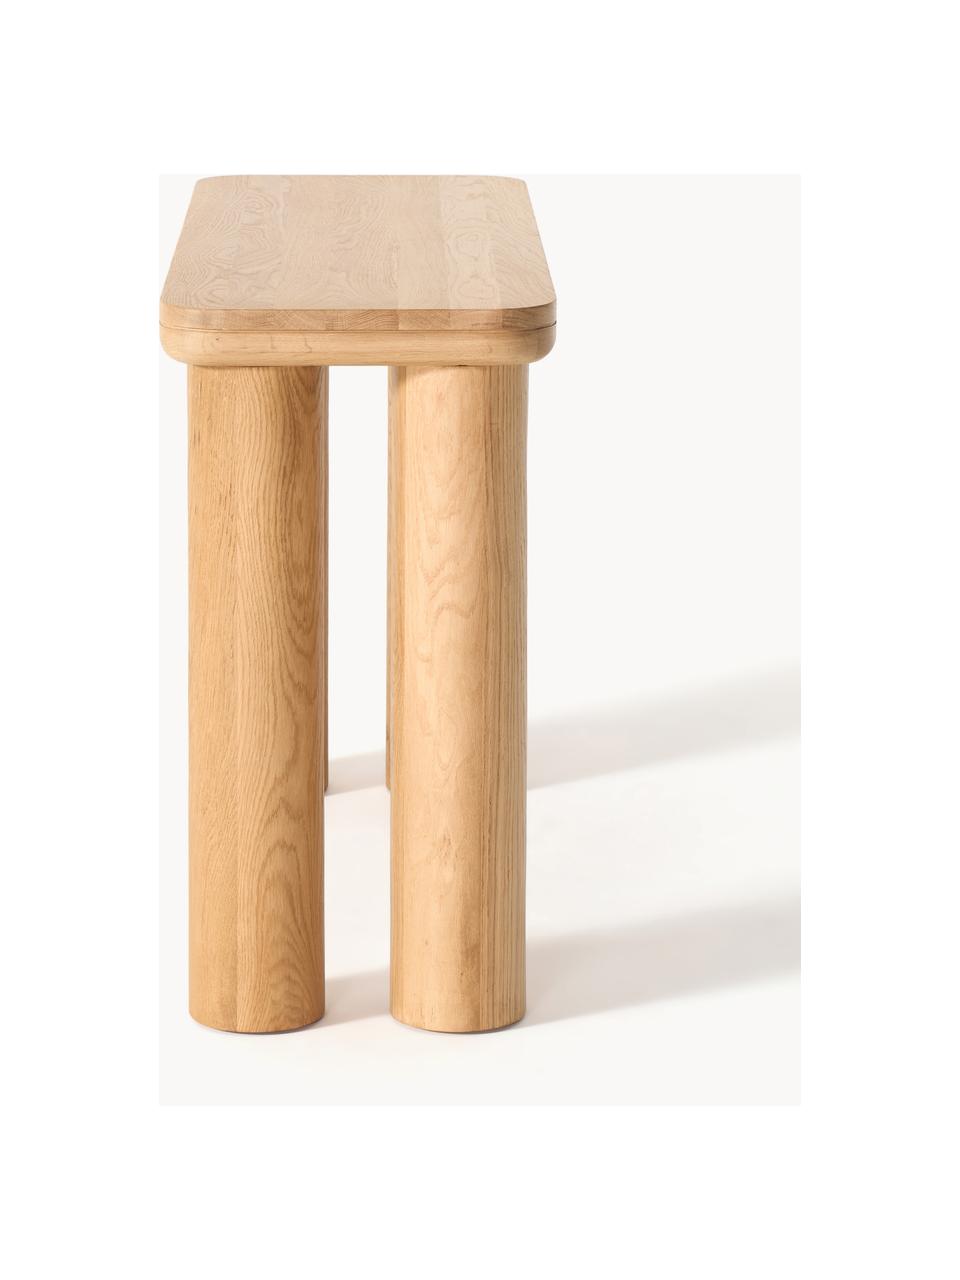 Konzolový stolek z dubového dřeva Kalia, Masivní dubové dřevo, olejované

Tento produkt je vyroben z udržitelných zdrojů dřeva s certifikací FSC®., Dubové dřevo, světle olejované, Š 110 cm, V 77 cm